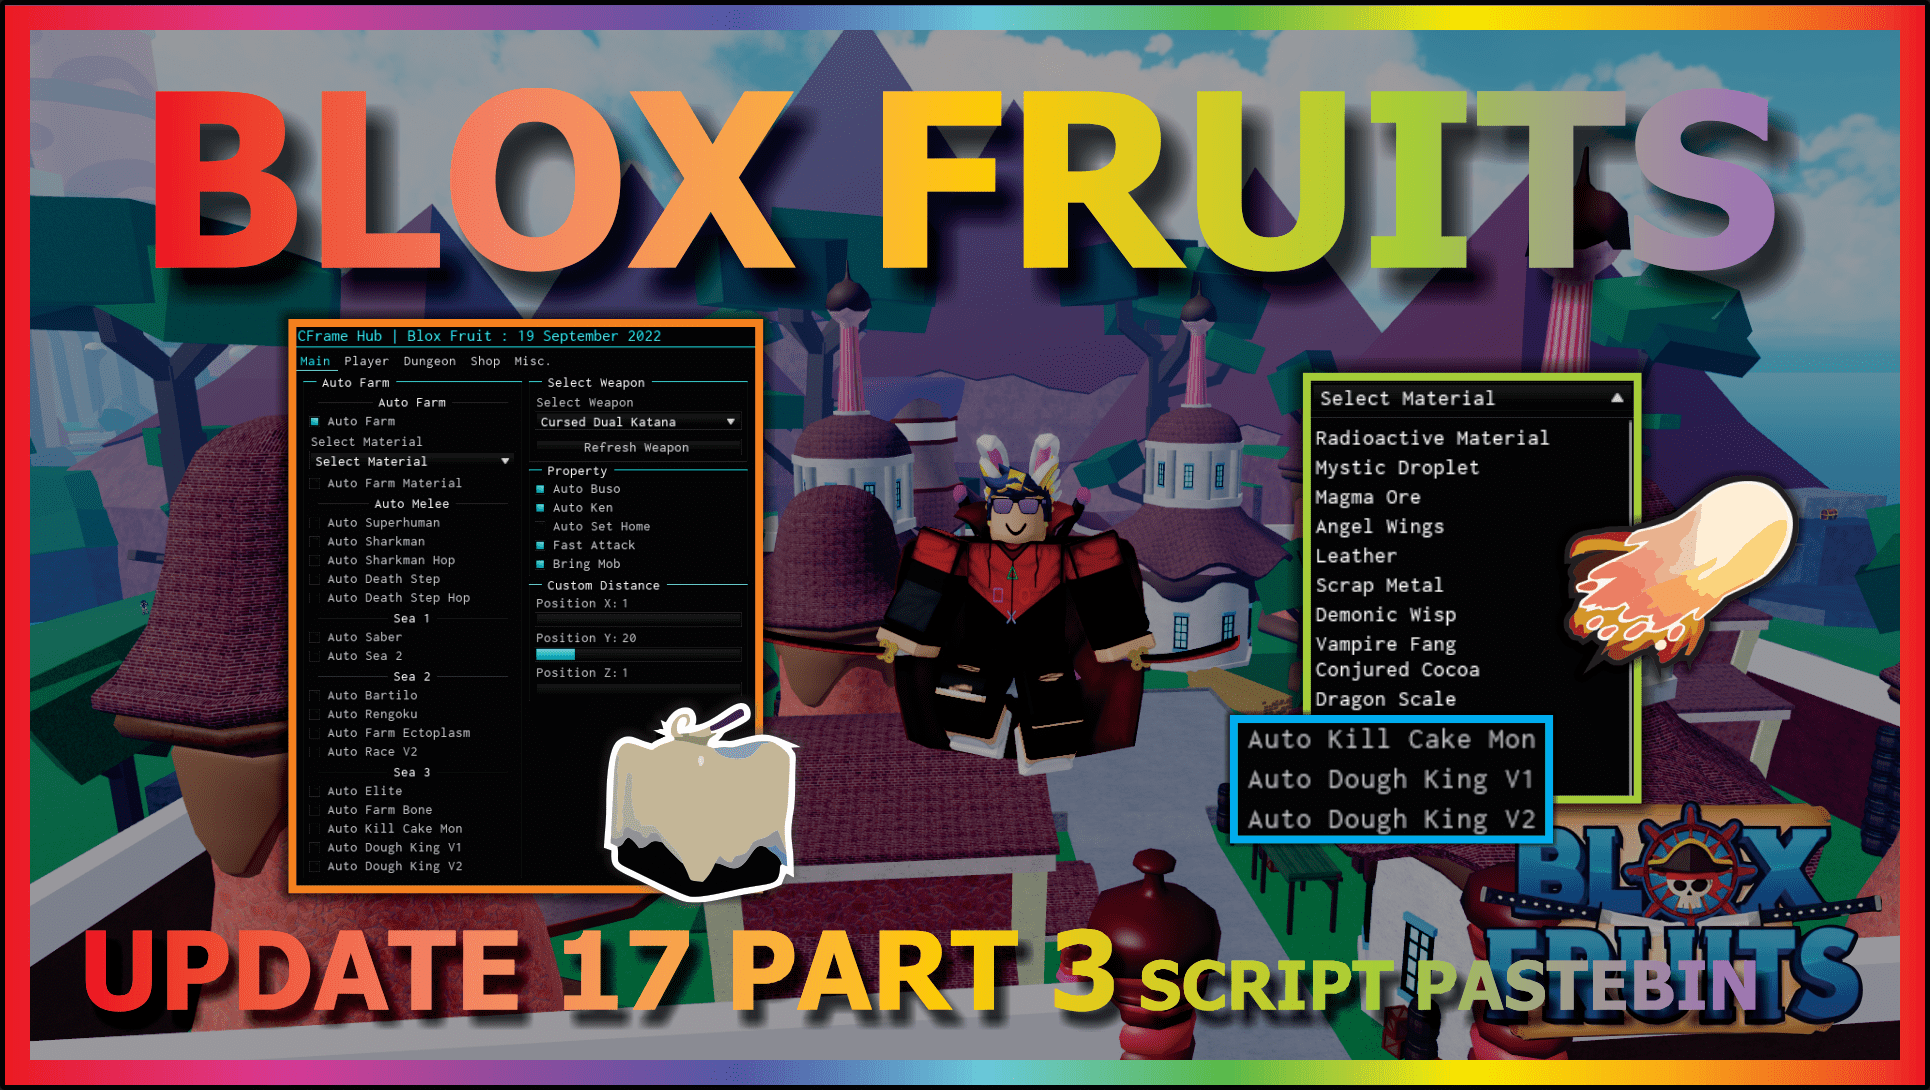 blox fruits script Autofarm Fruits🍇 